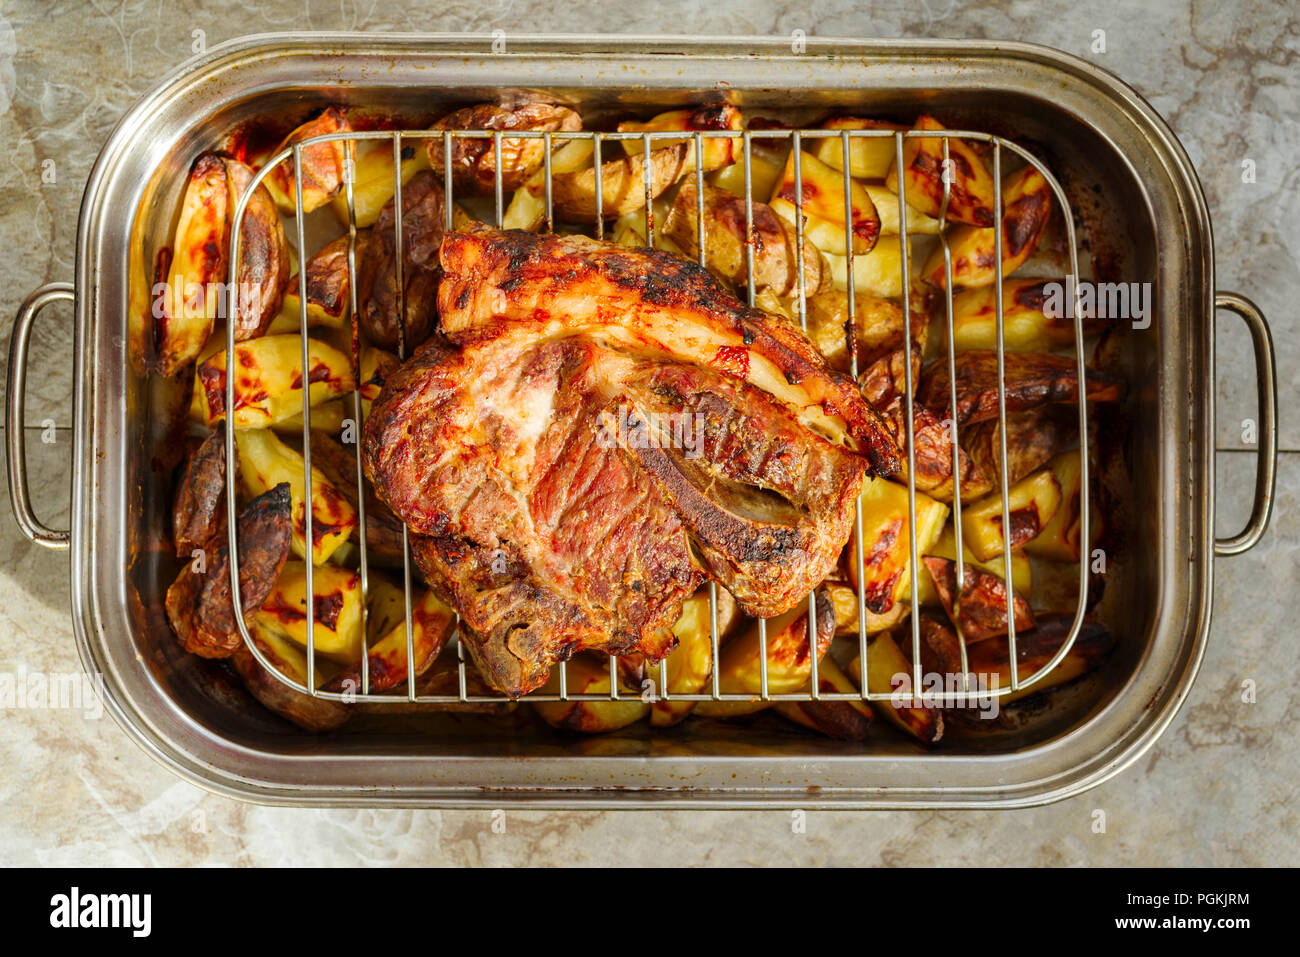 Fleisch mit Kartoffeln im Ofen Stockfotografie - Alamy